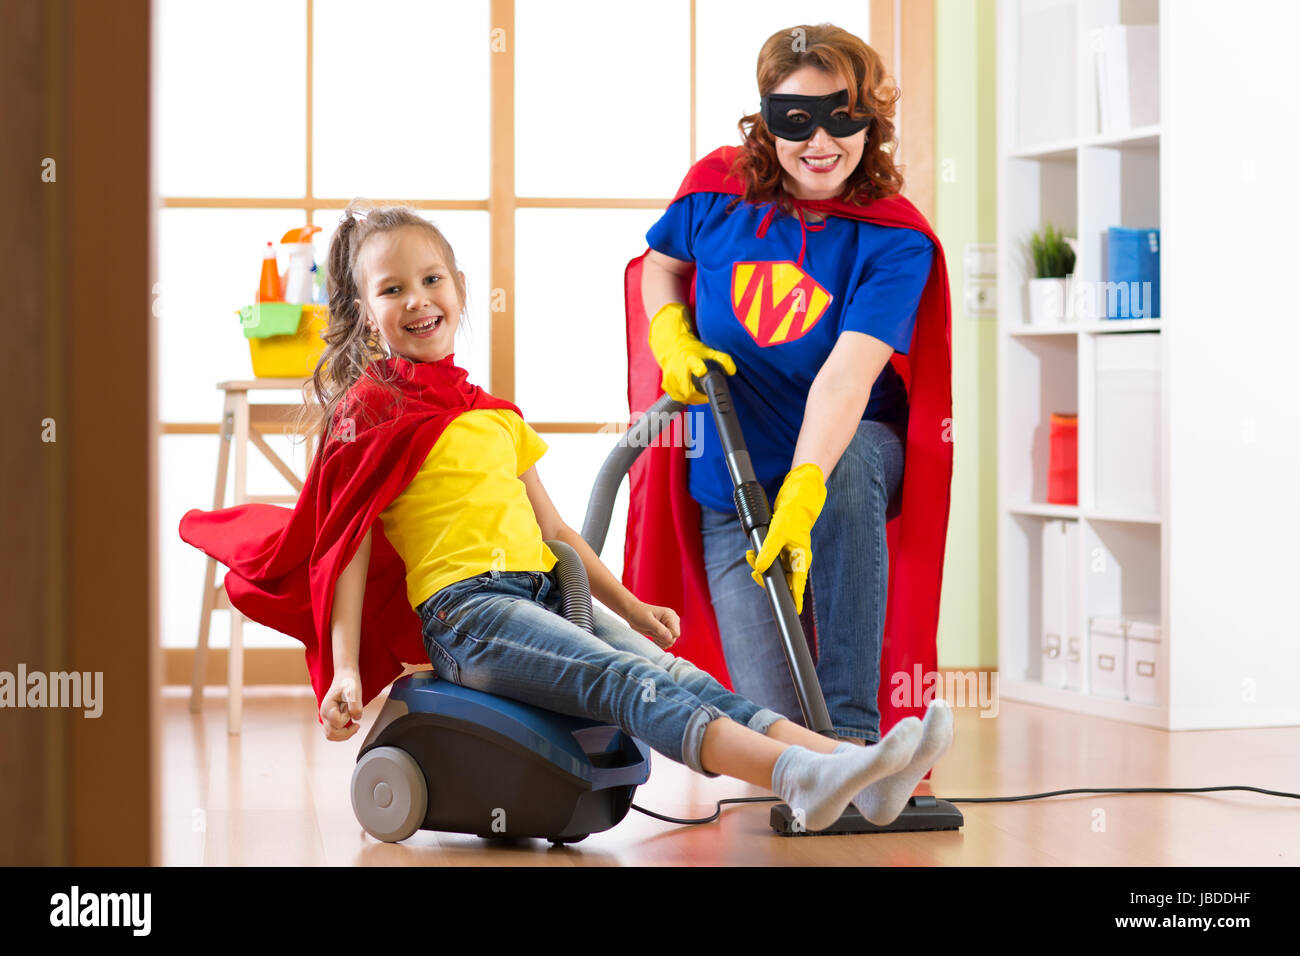 Jeune fille et sa mère Superhero costumes portés par... Enfant mignon et femme font l'assistant de nettoyage prix et avoir un plaisir. Banque D'Images